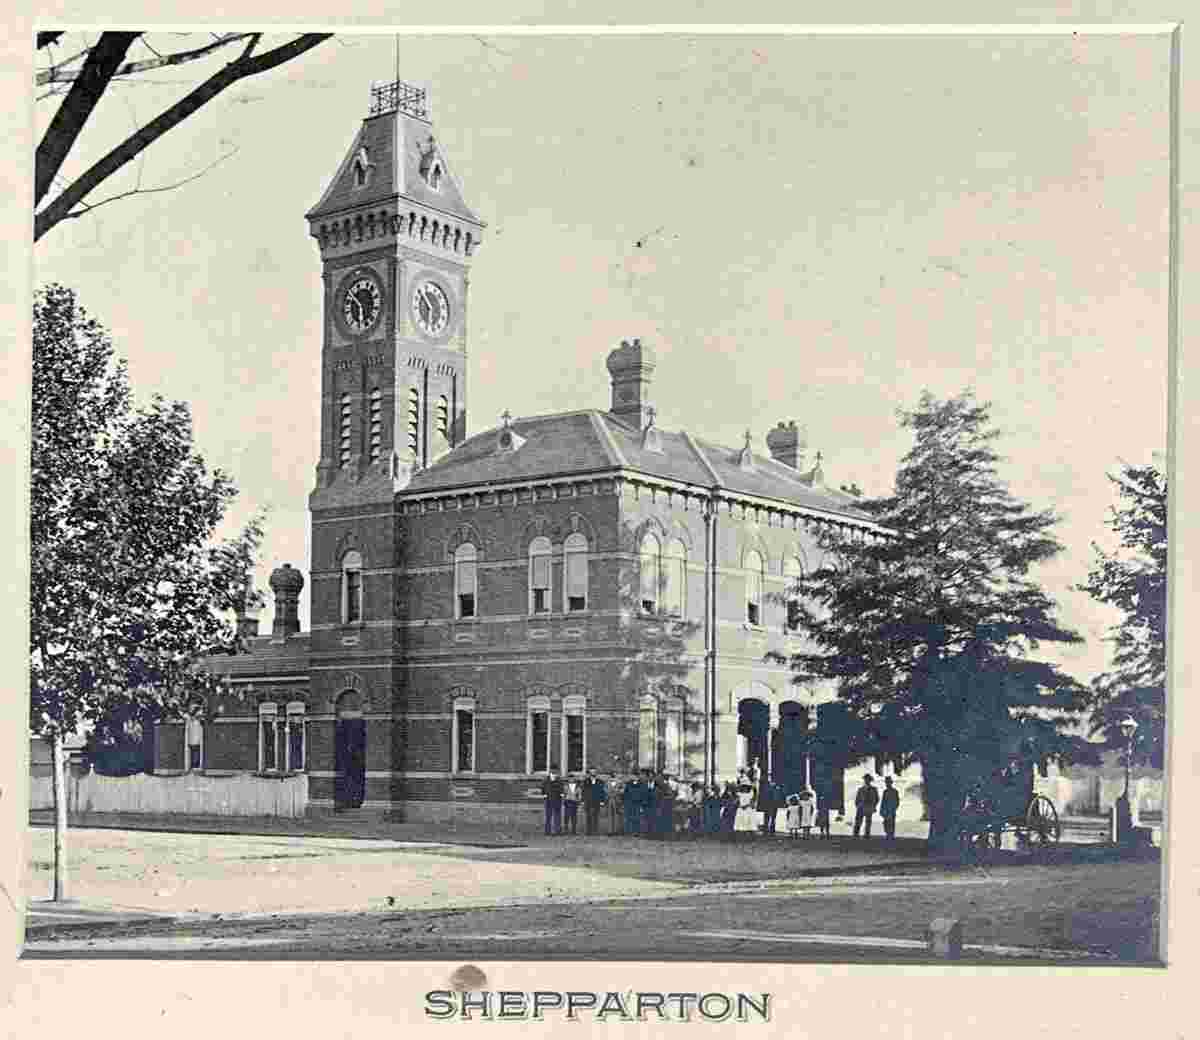 Shepparton. Public building - Post Office, circa 1900